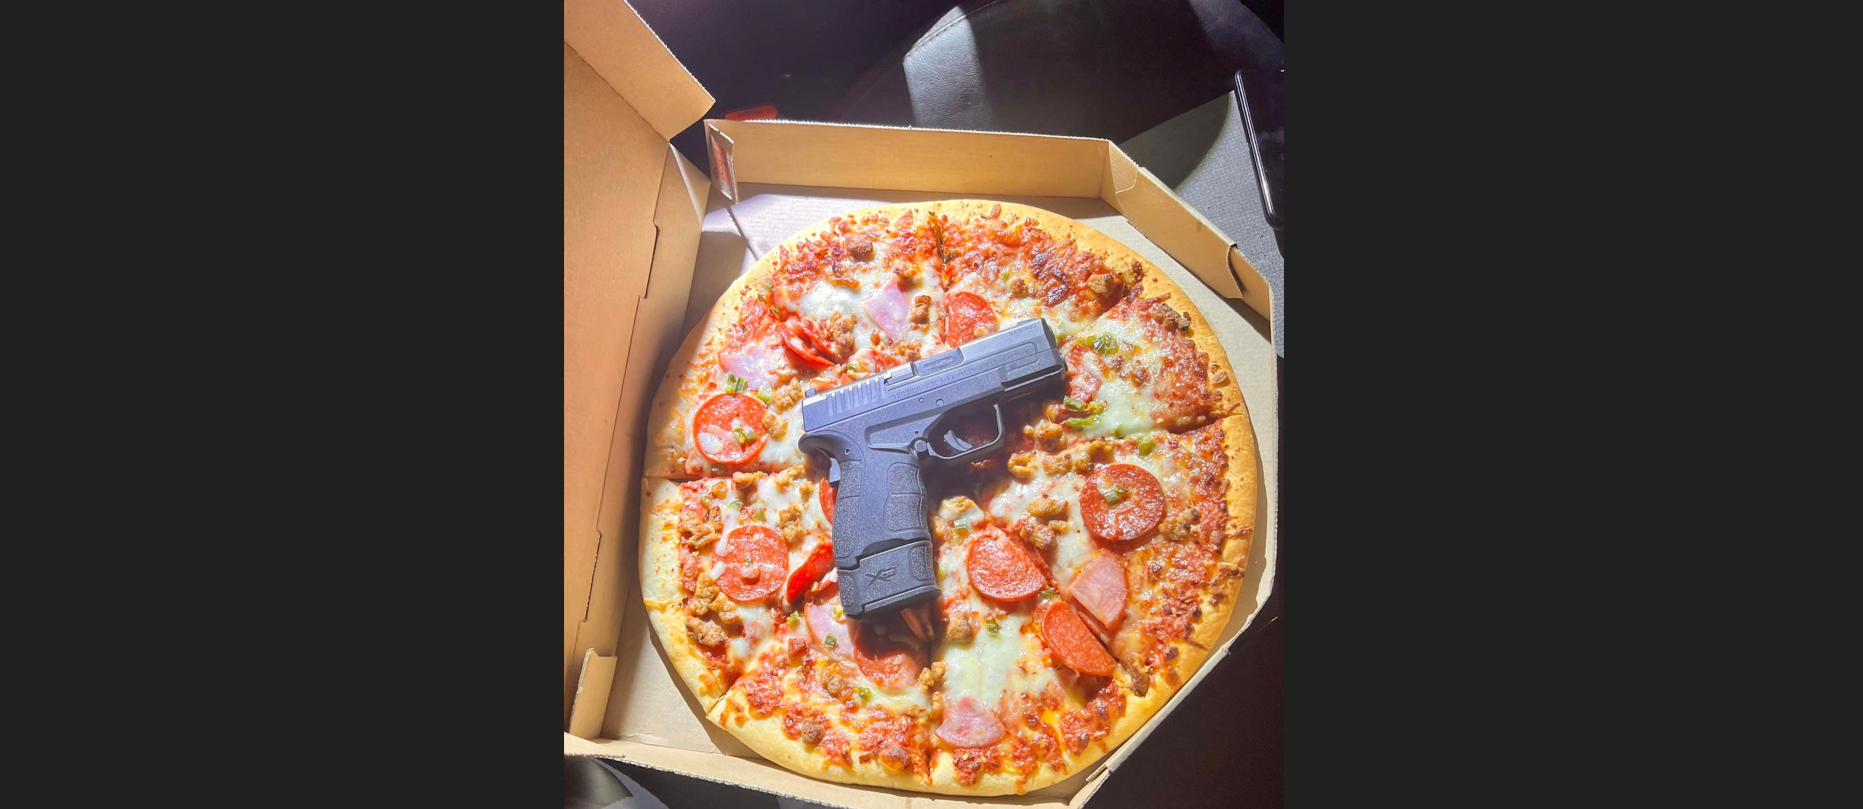 ΗΠΑ: Του έκαναν έλεγχο και βρήκαν όπλο μέσα στην… πίτσα του (φωτο)